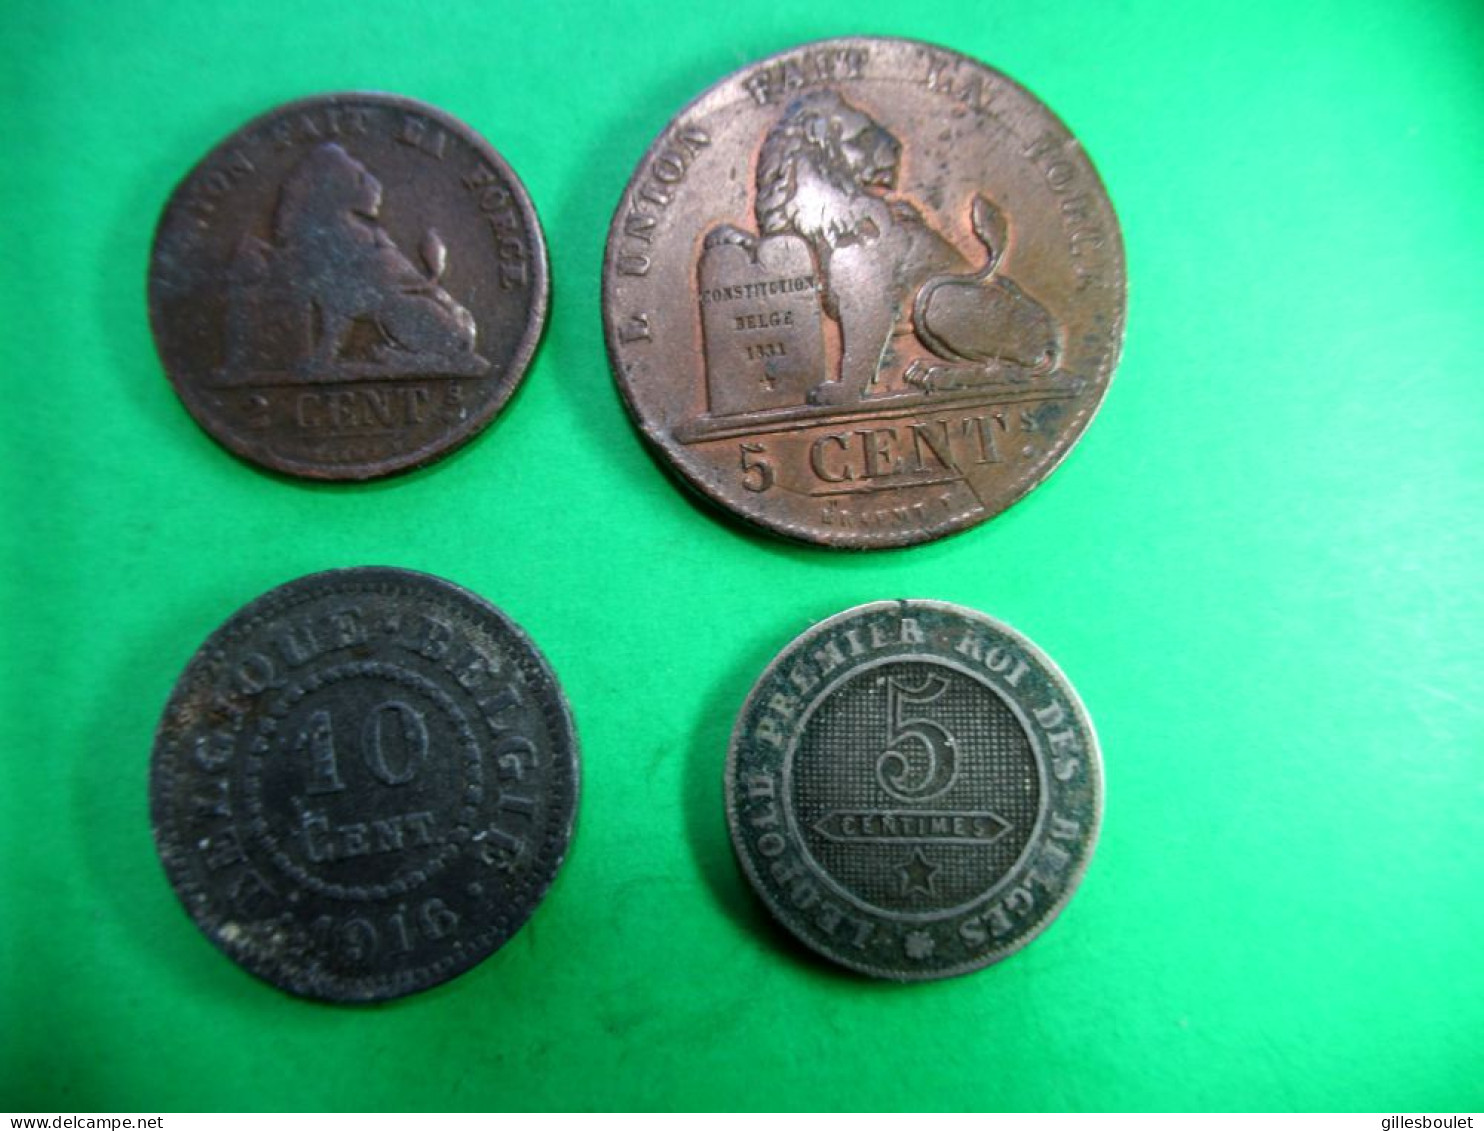 4 Belles Belges. 5 Centimes 1837 Et 1862. 2 Centimes 1876 Et 10 Centimes 1916. Toutes Belles. - 5 Cents